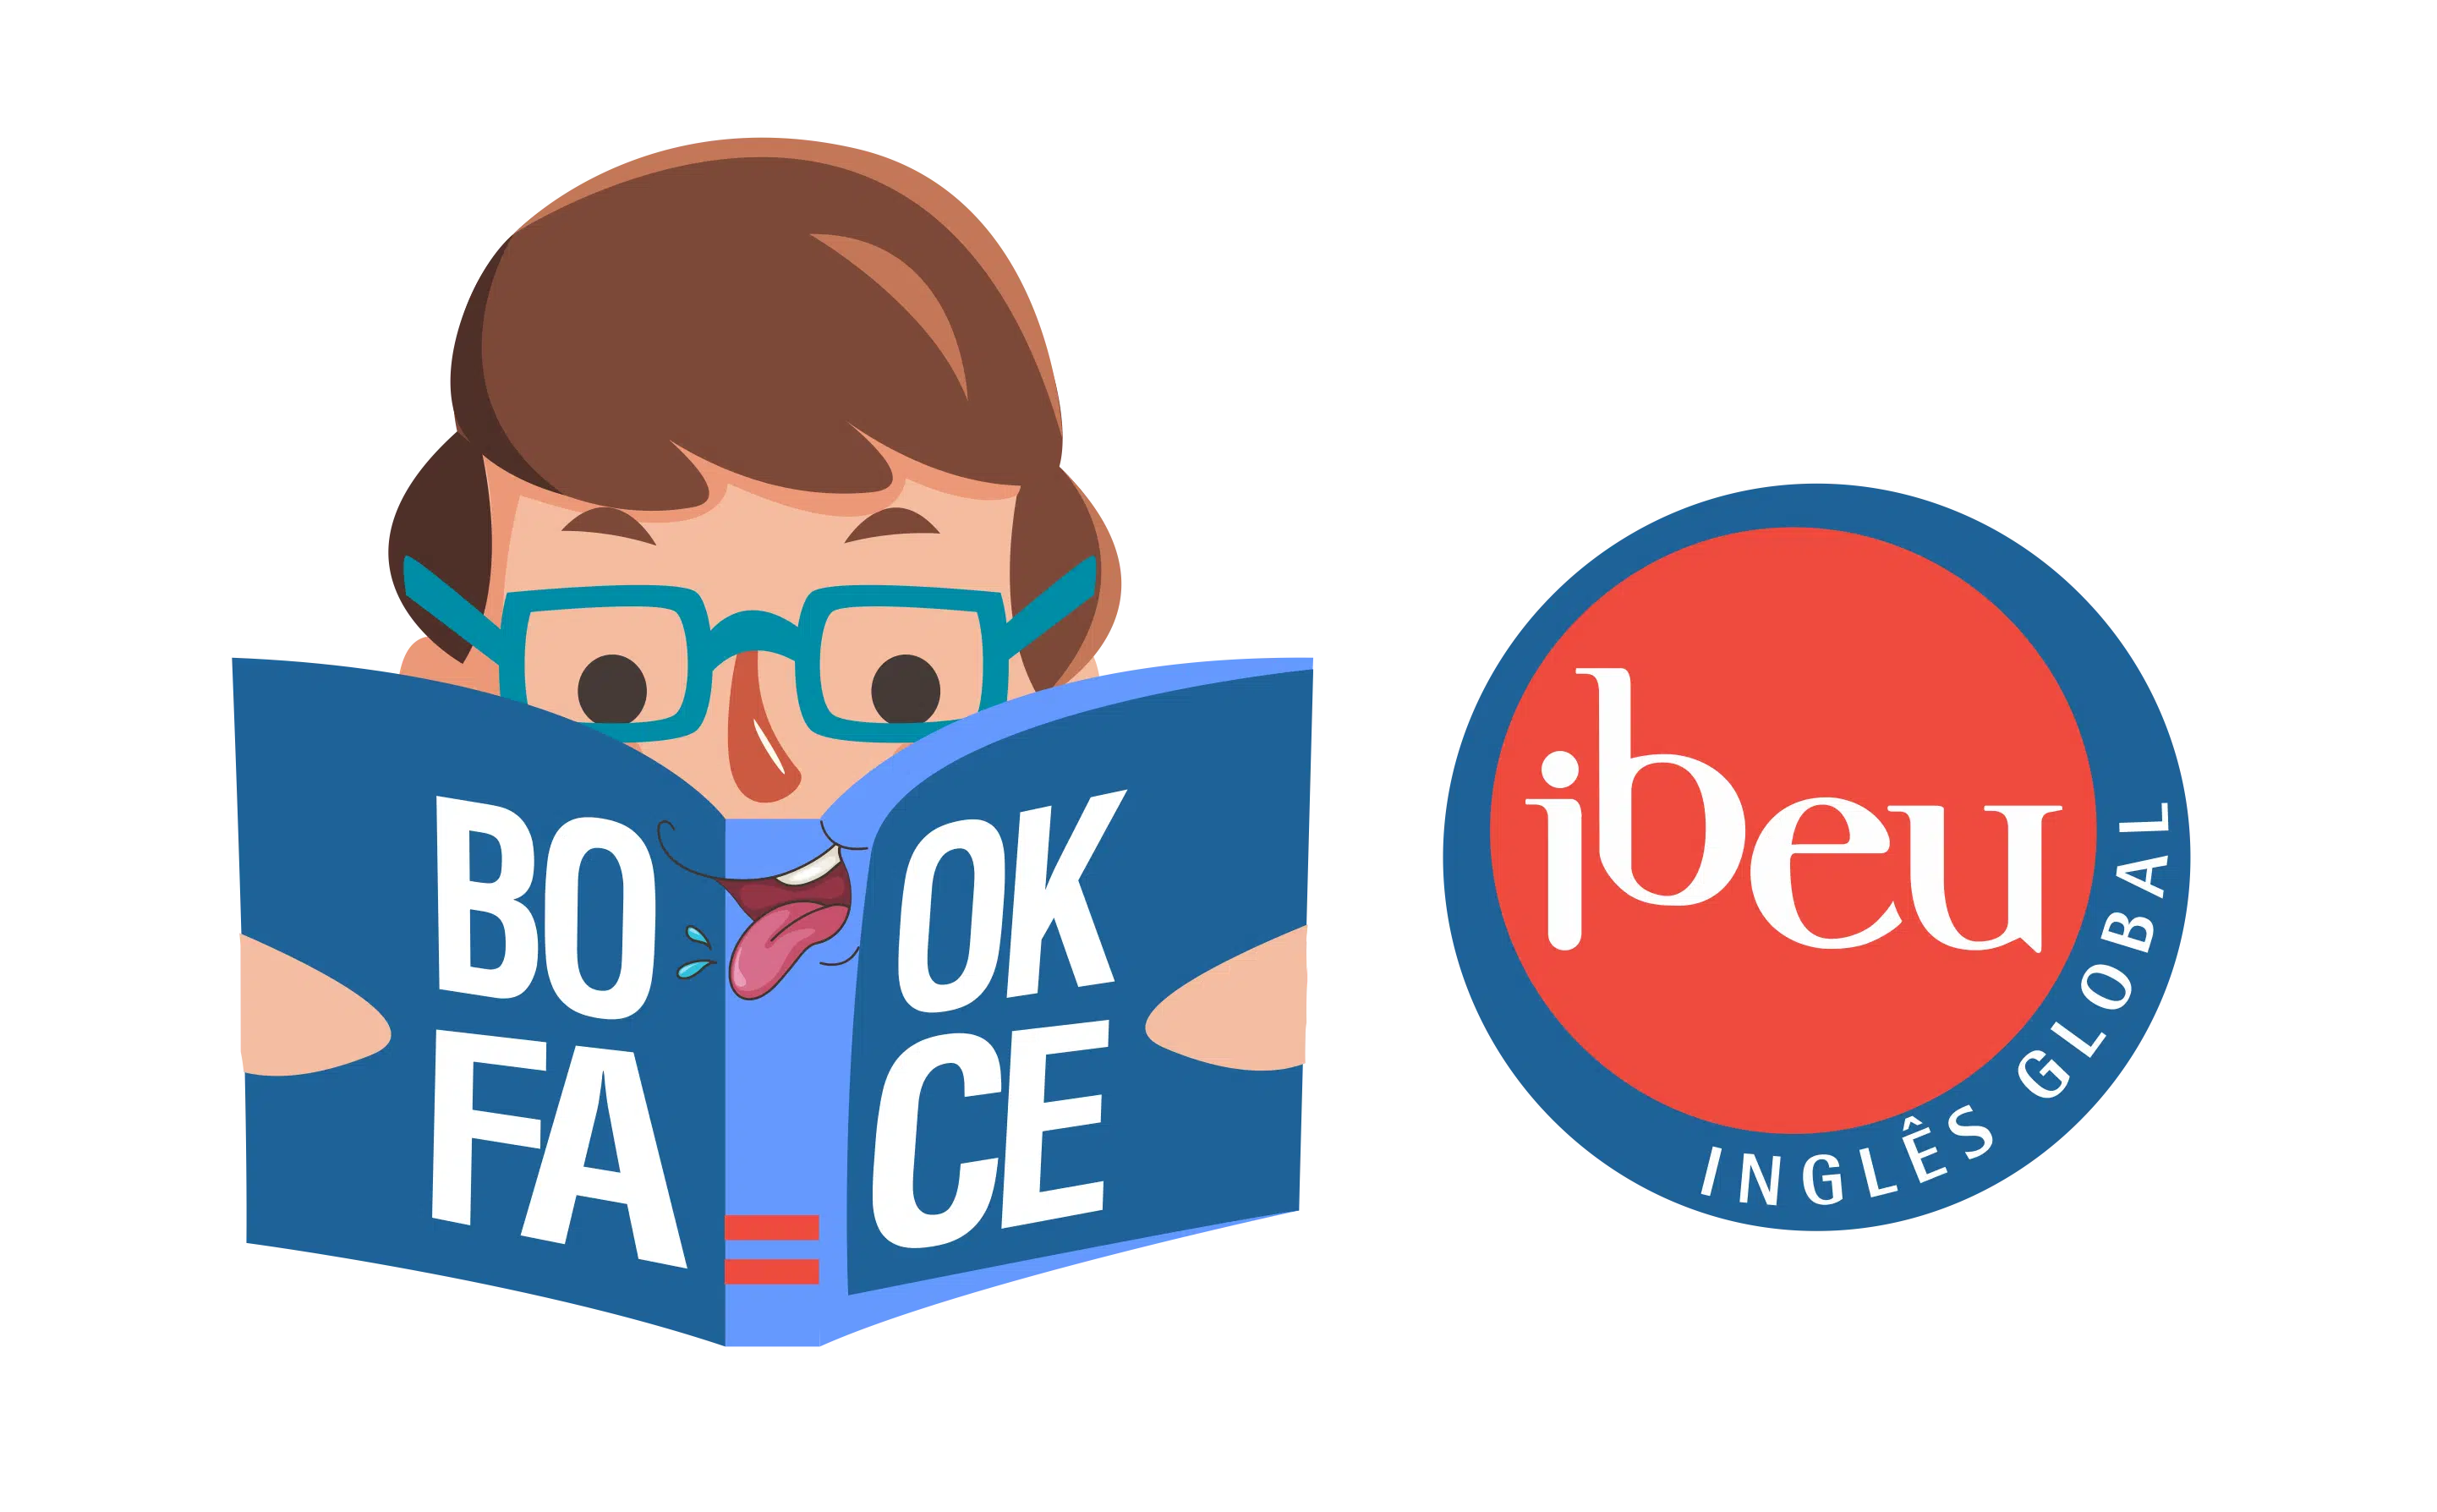 L-Ibeu Bookface